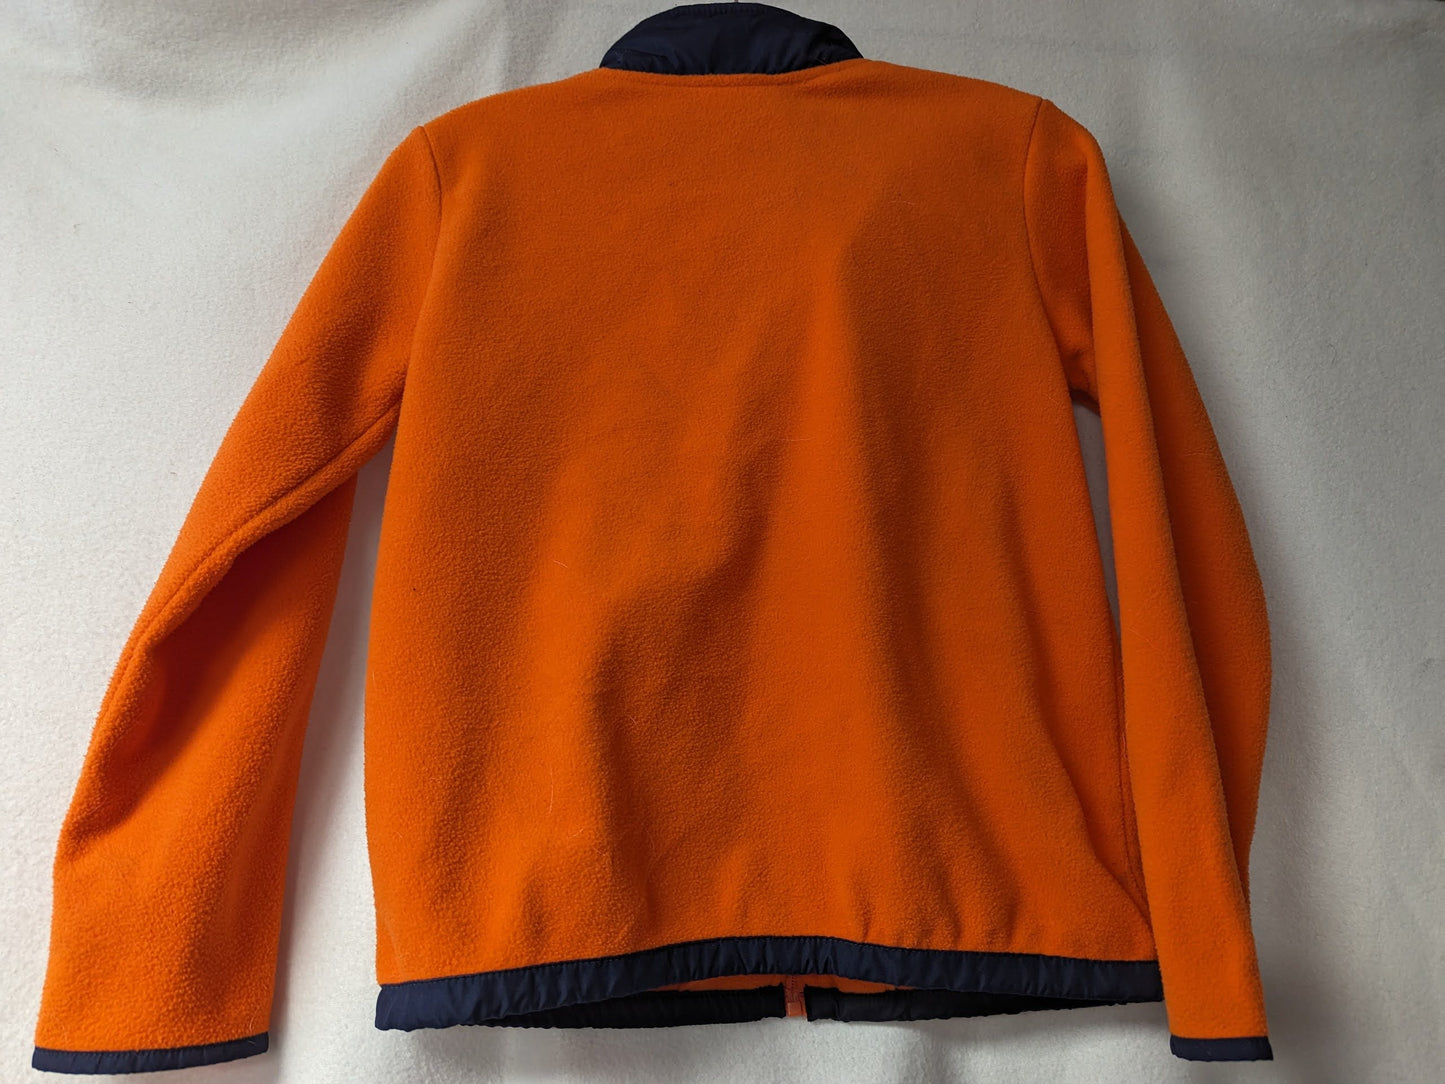 Denver Broncos NFL Fleece Jacket Coat Size Youth Color Orange Condition Used